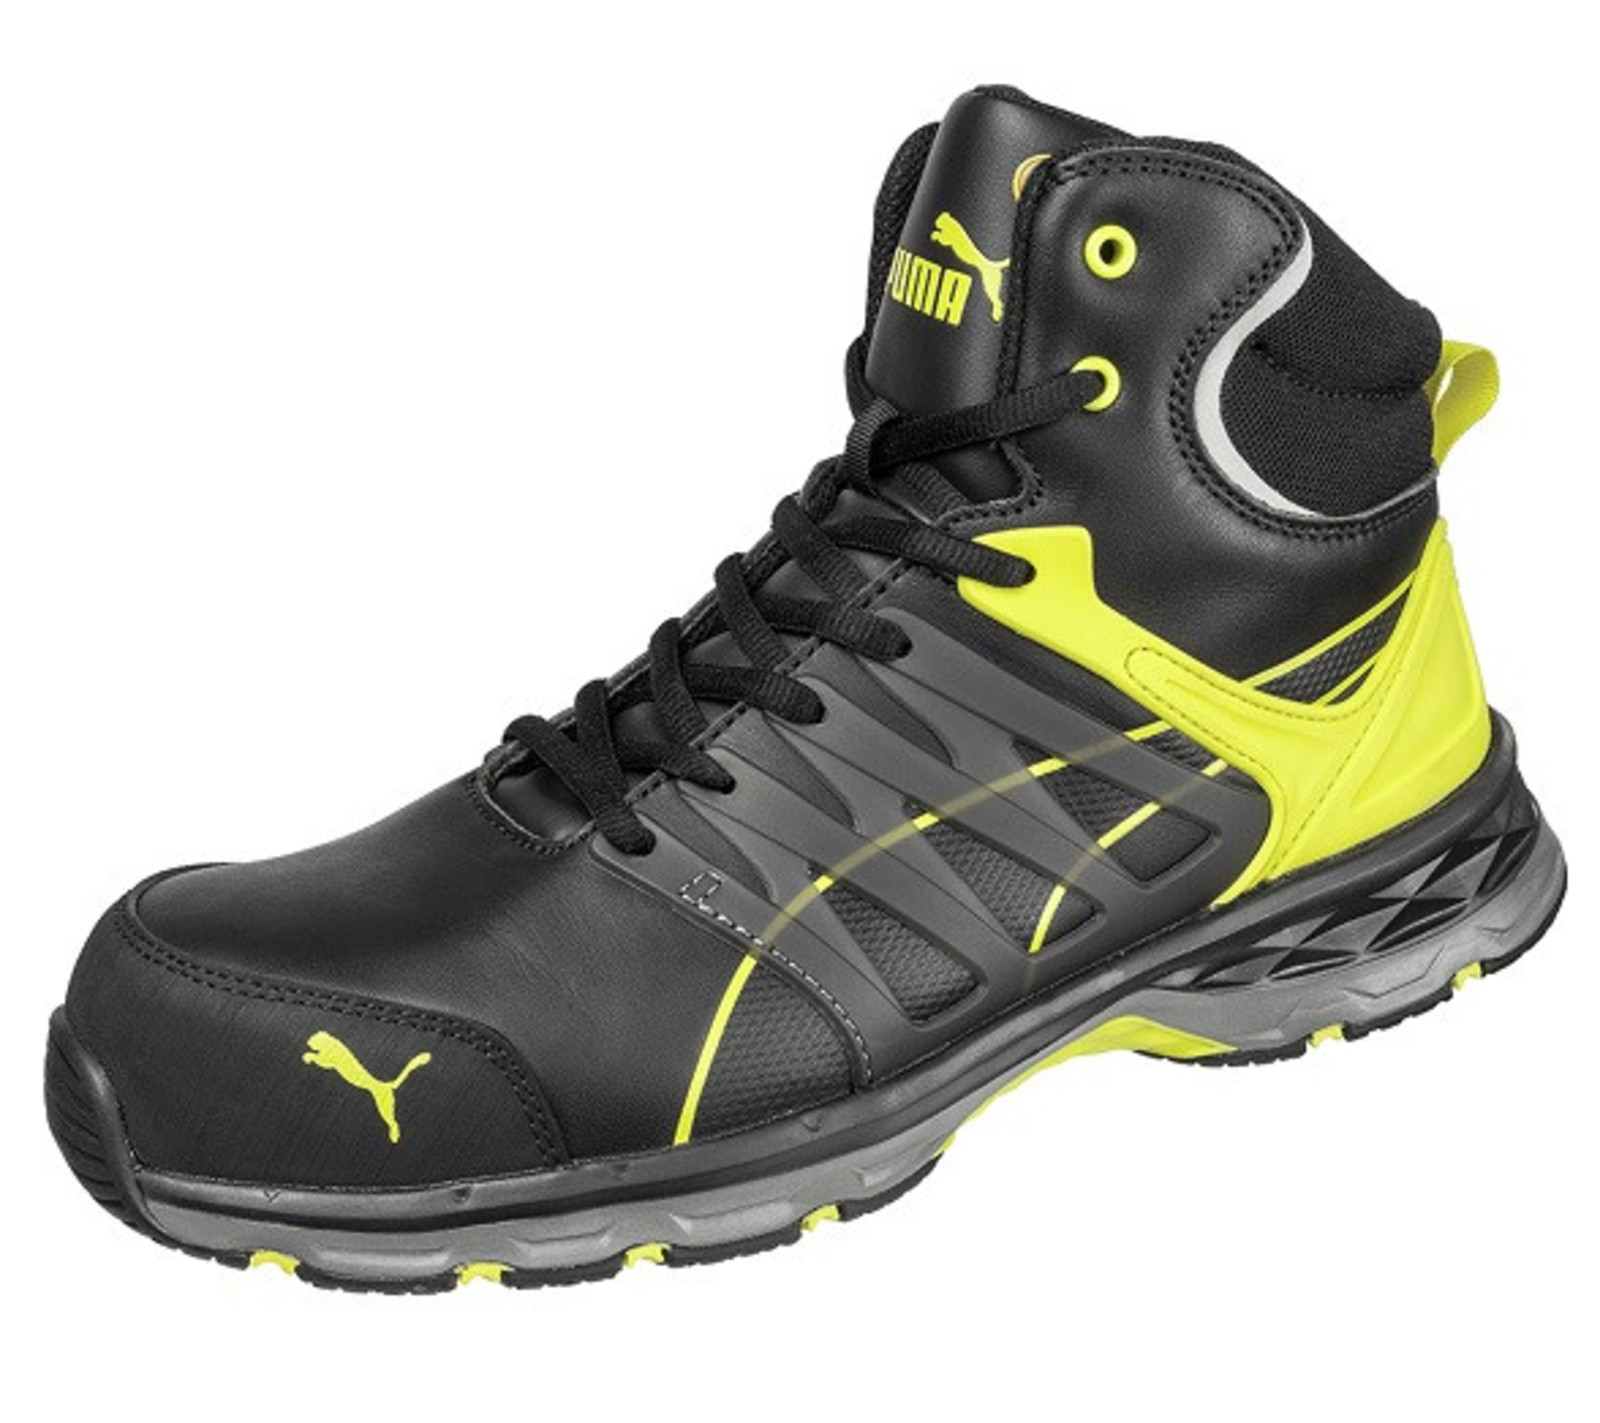 Bezpečnostná členková obuv Puma Velocity 2.0 S3 SRC - veľkosť: 40, farba: čierna/žltá